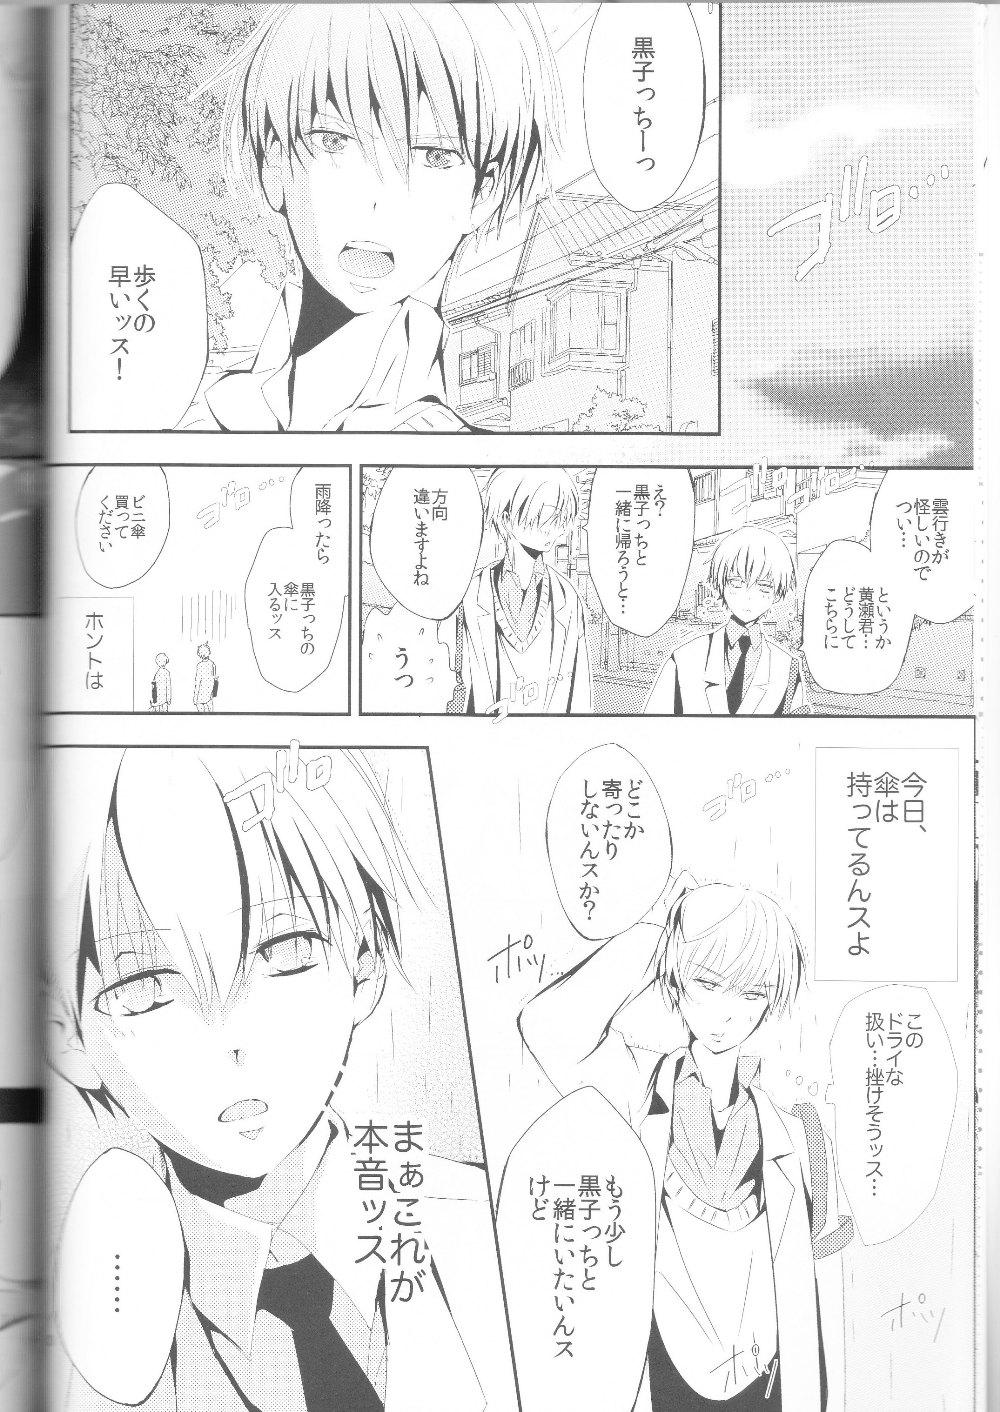 Stepdaughter Kisekise × Kuroko 3P - Kuroko no basuke Stud - Page 11